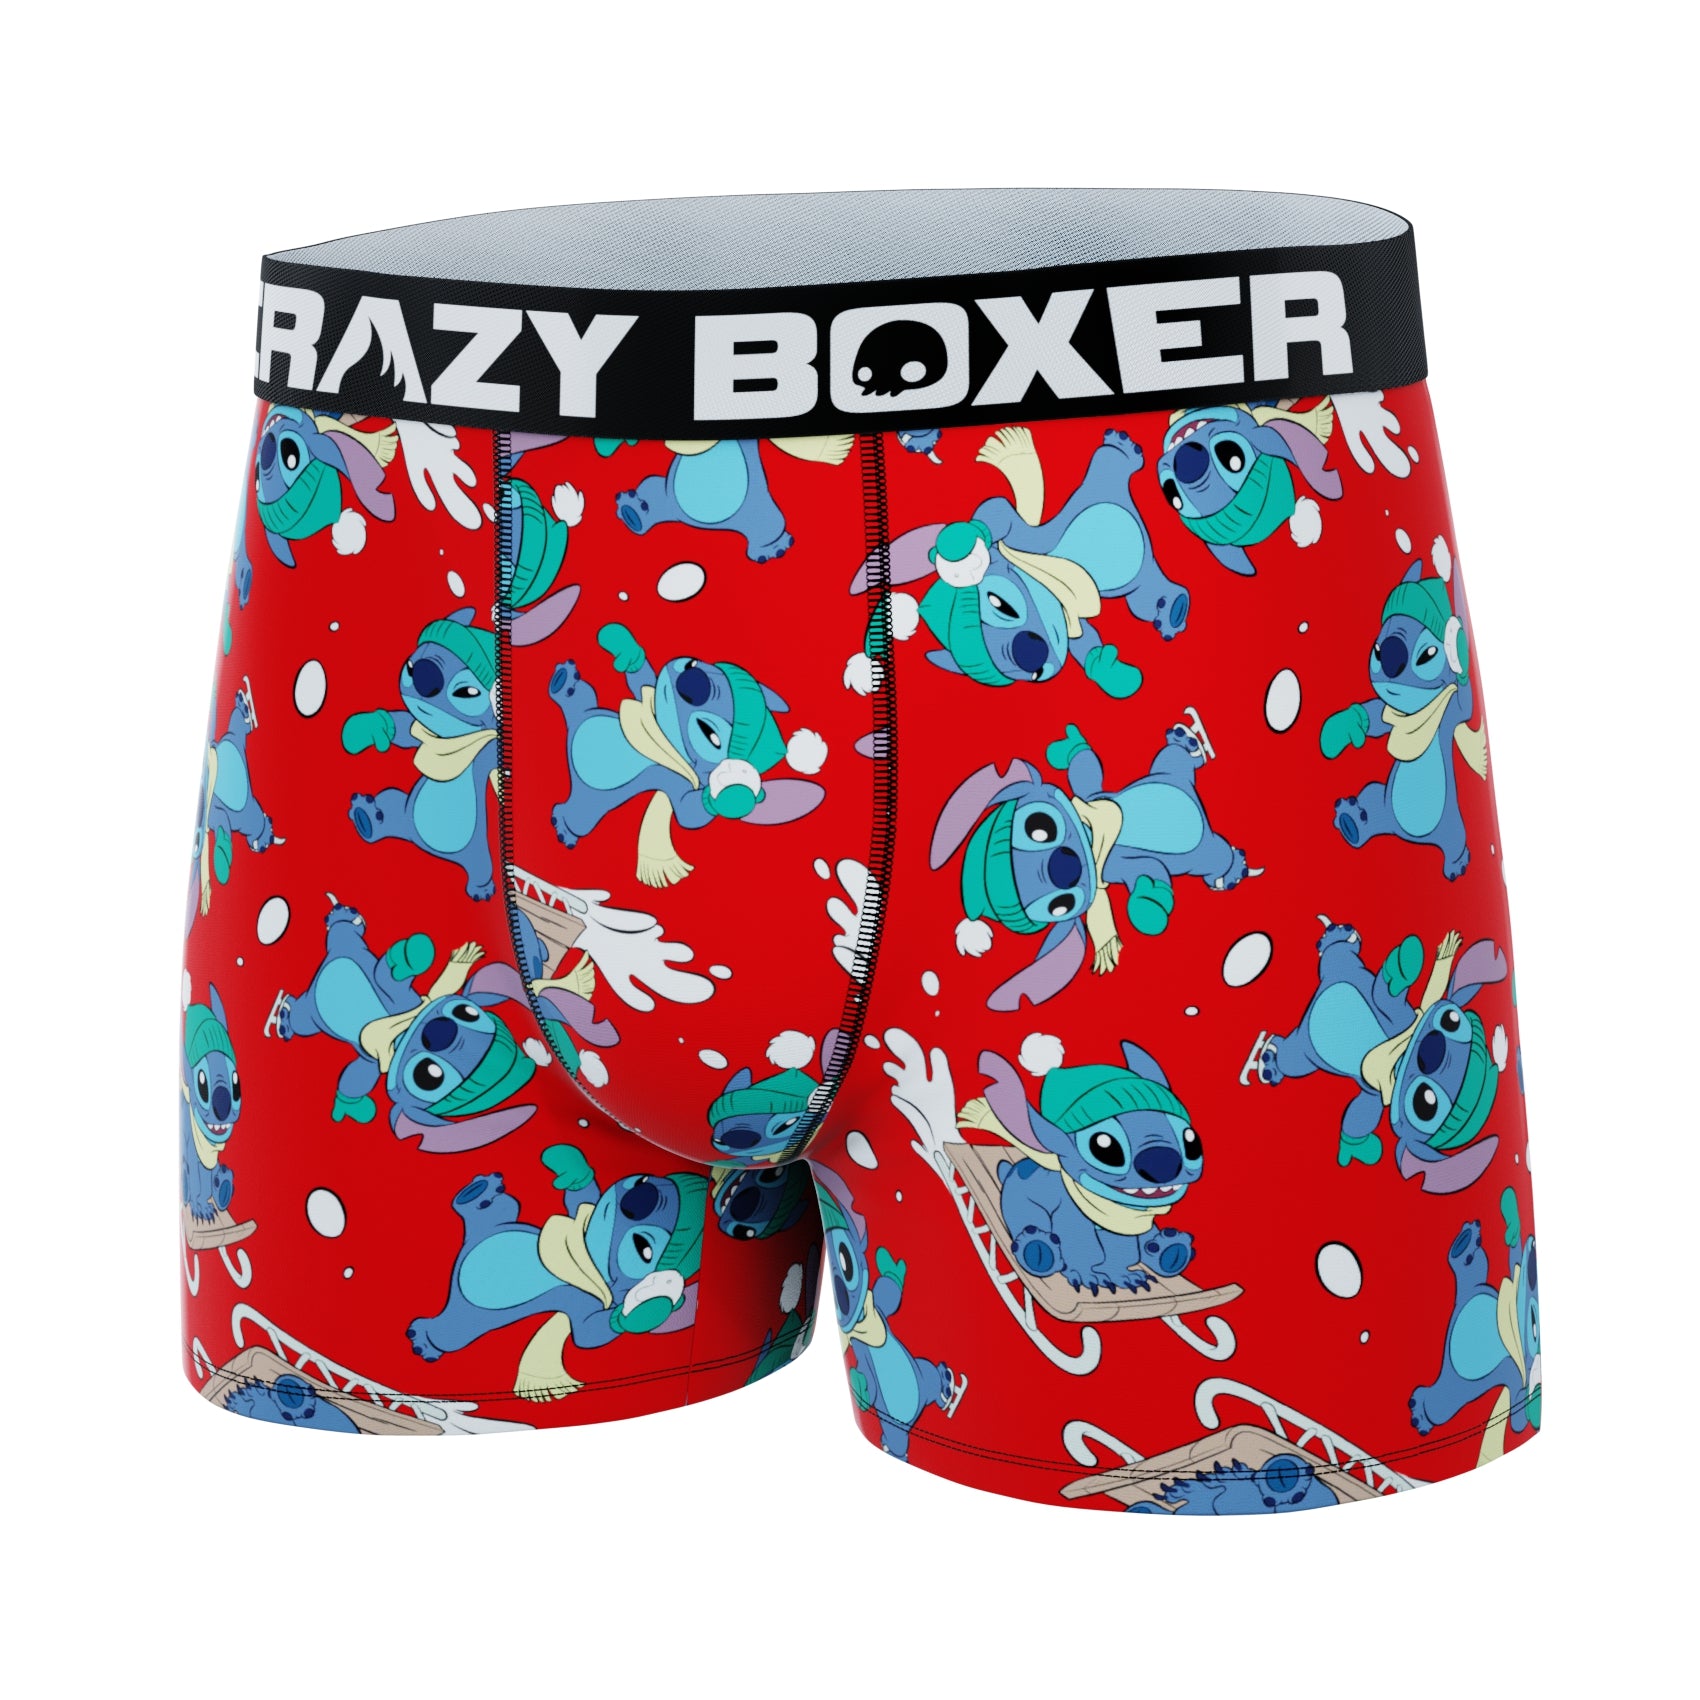 CRAZYBOXER Disney Tropical Stitch Men's Boxer Briefs